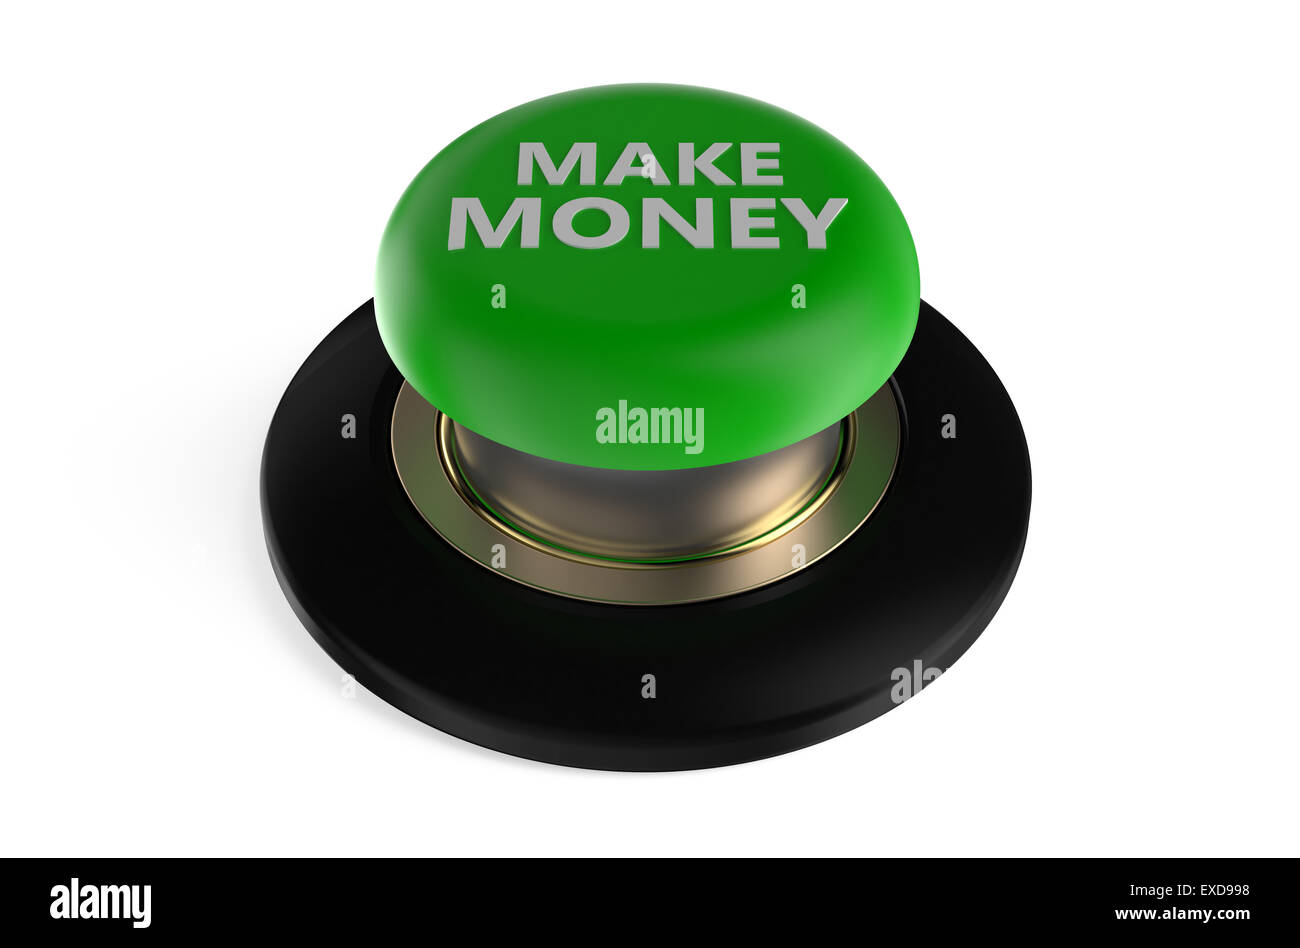 Make money" premere il pulsante isolato su sfondo bianco Foto Stock